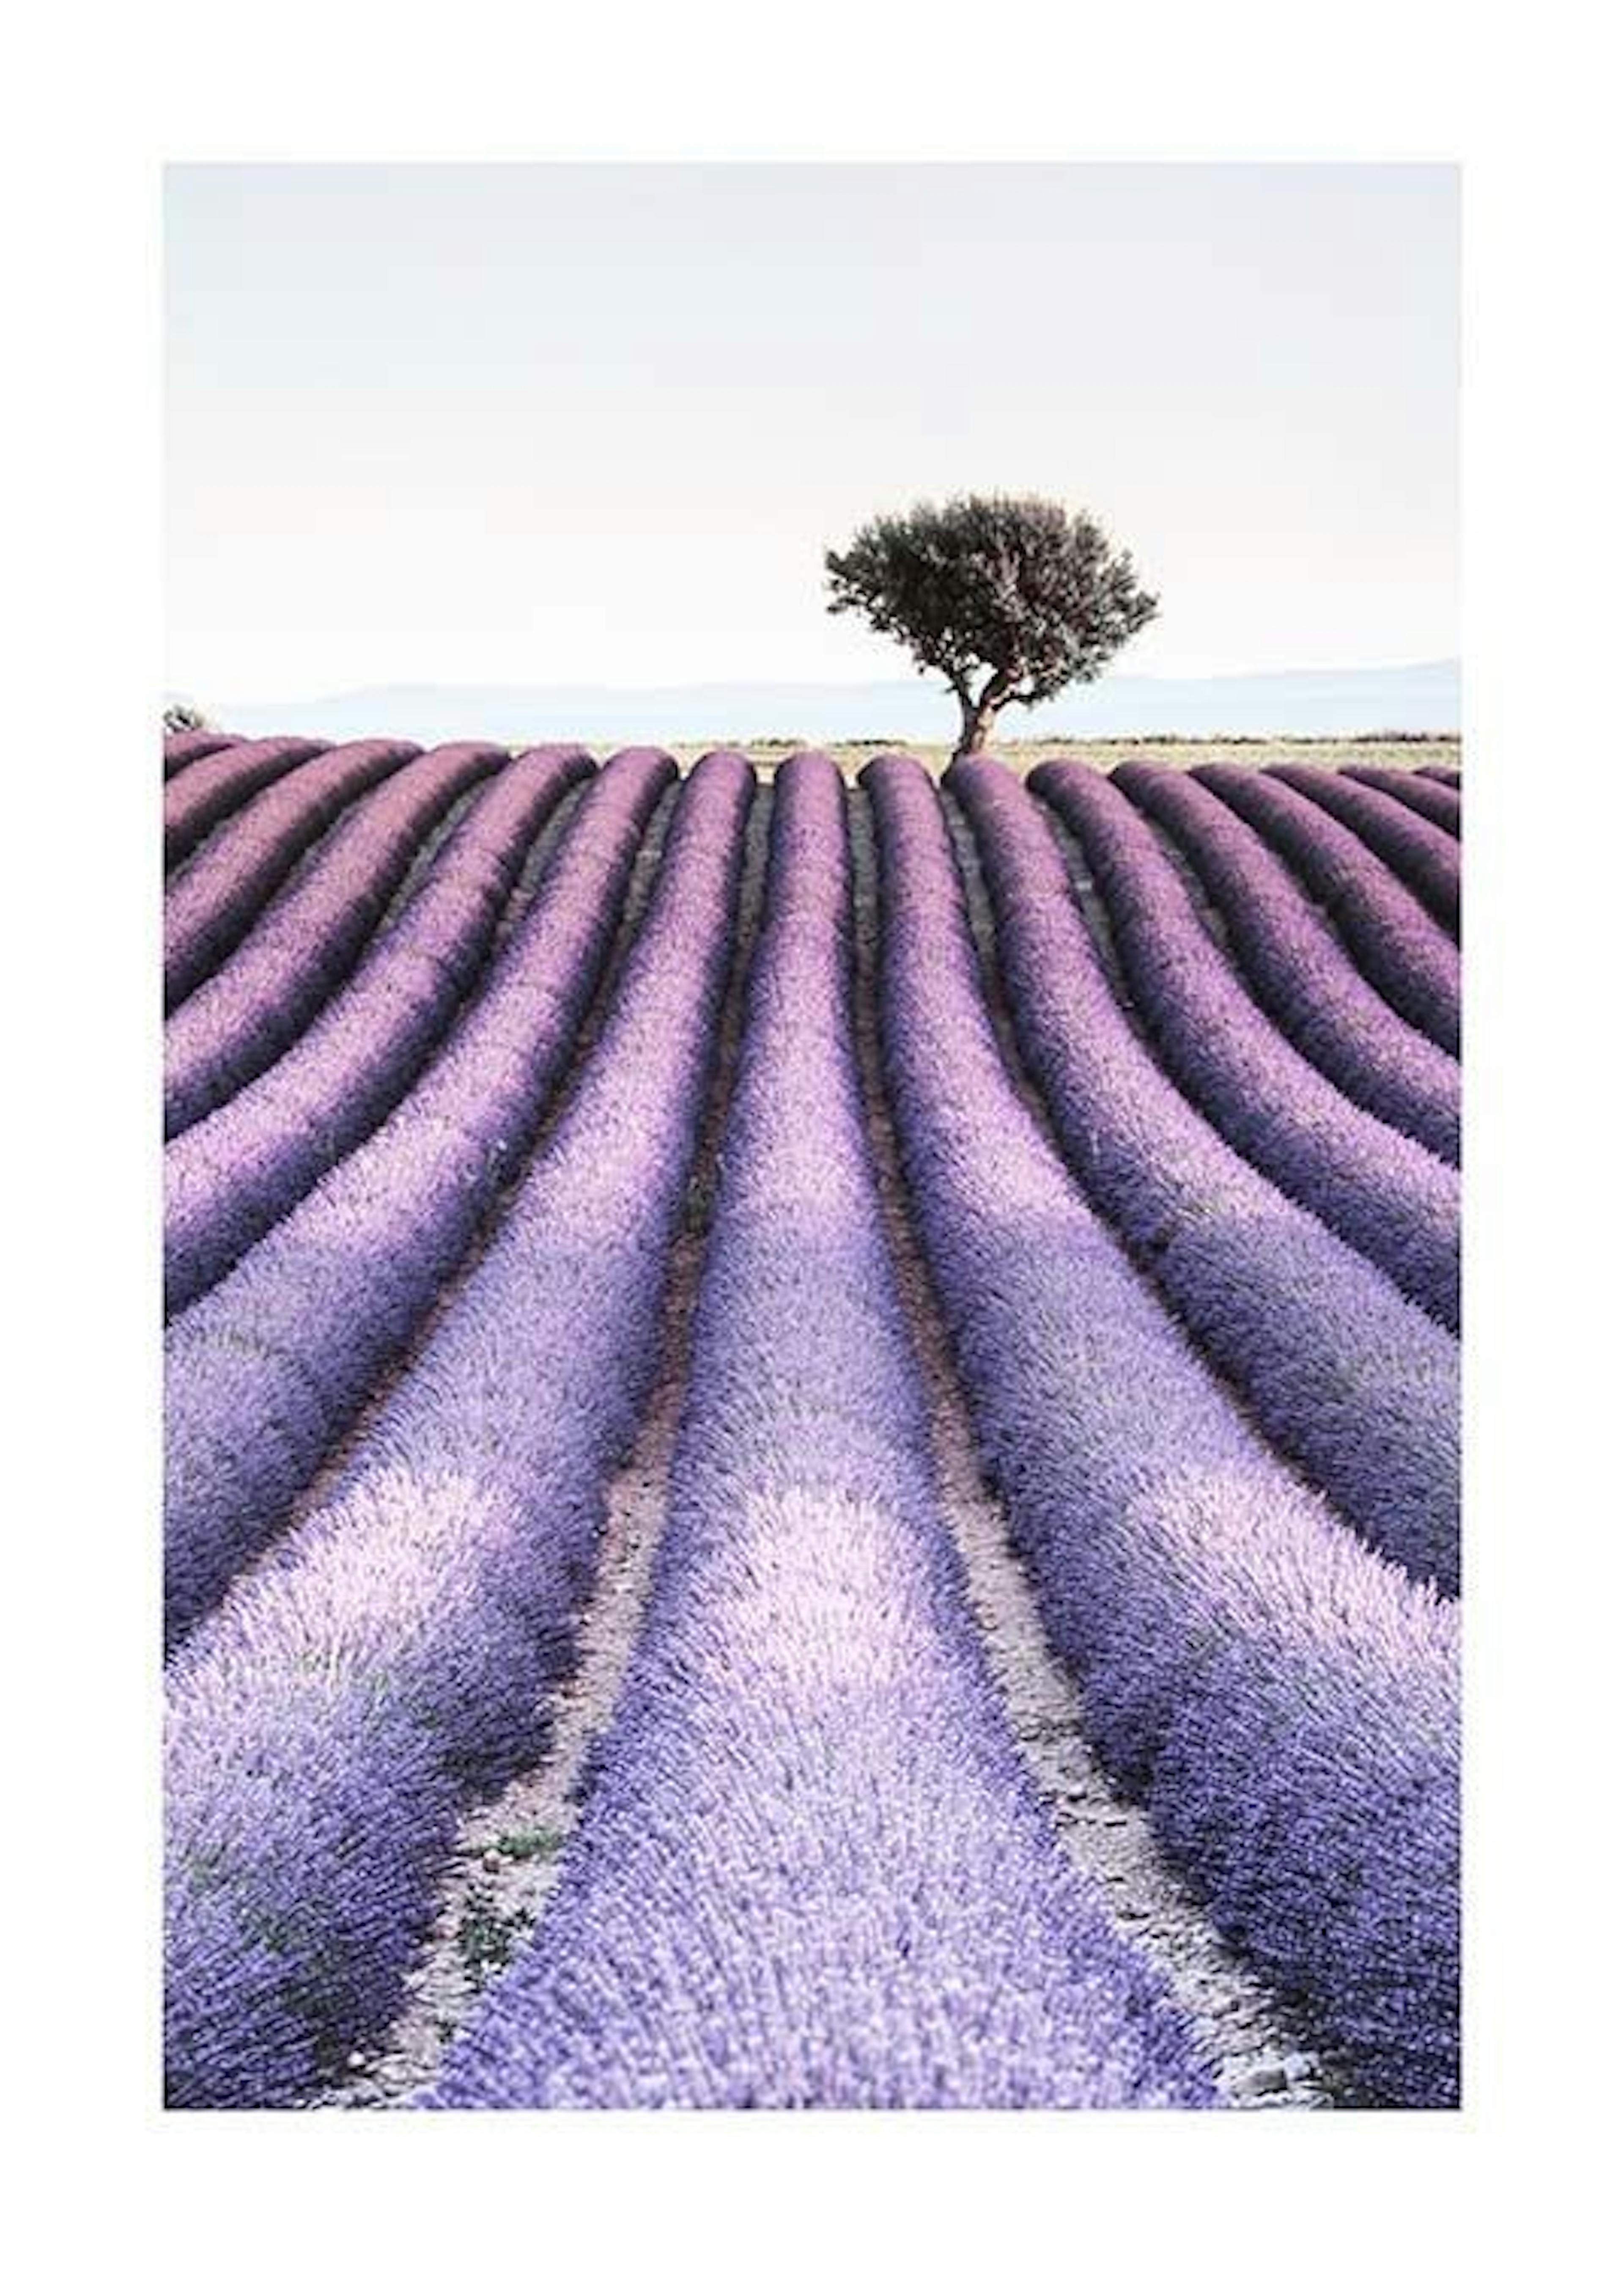 Provence 포스터 0